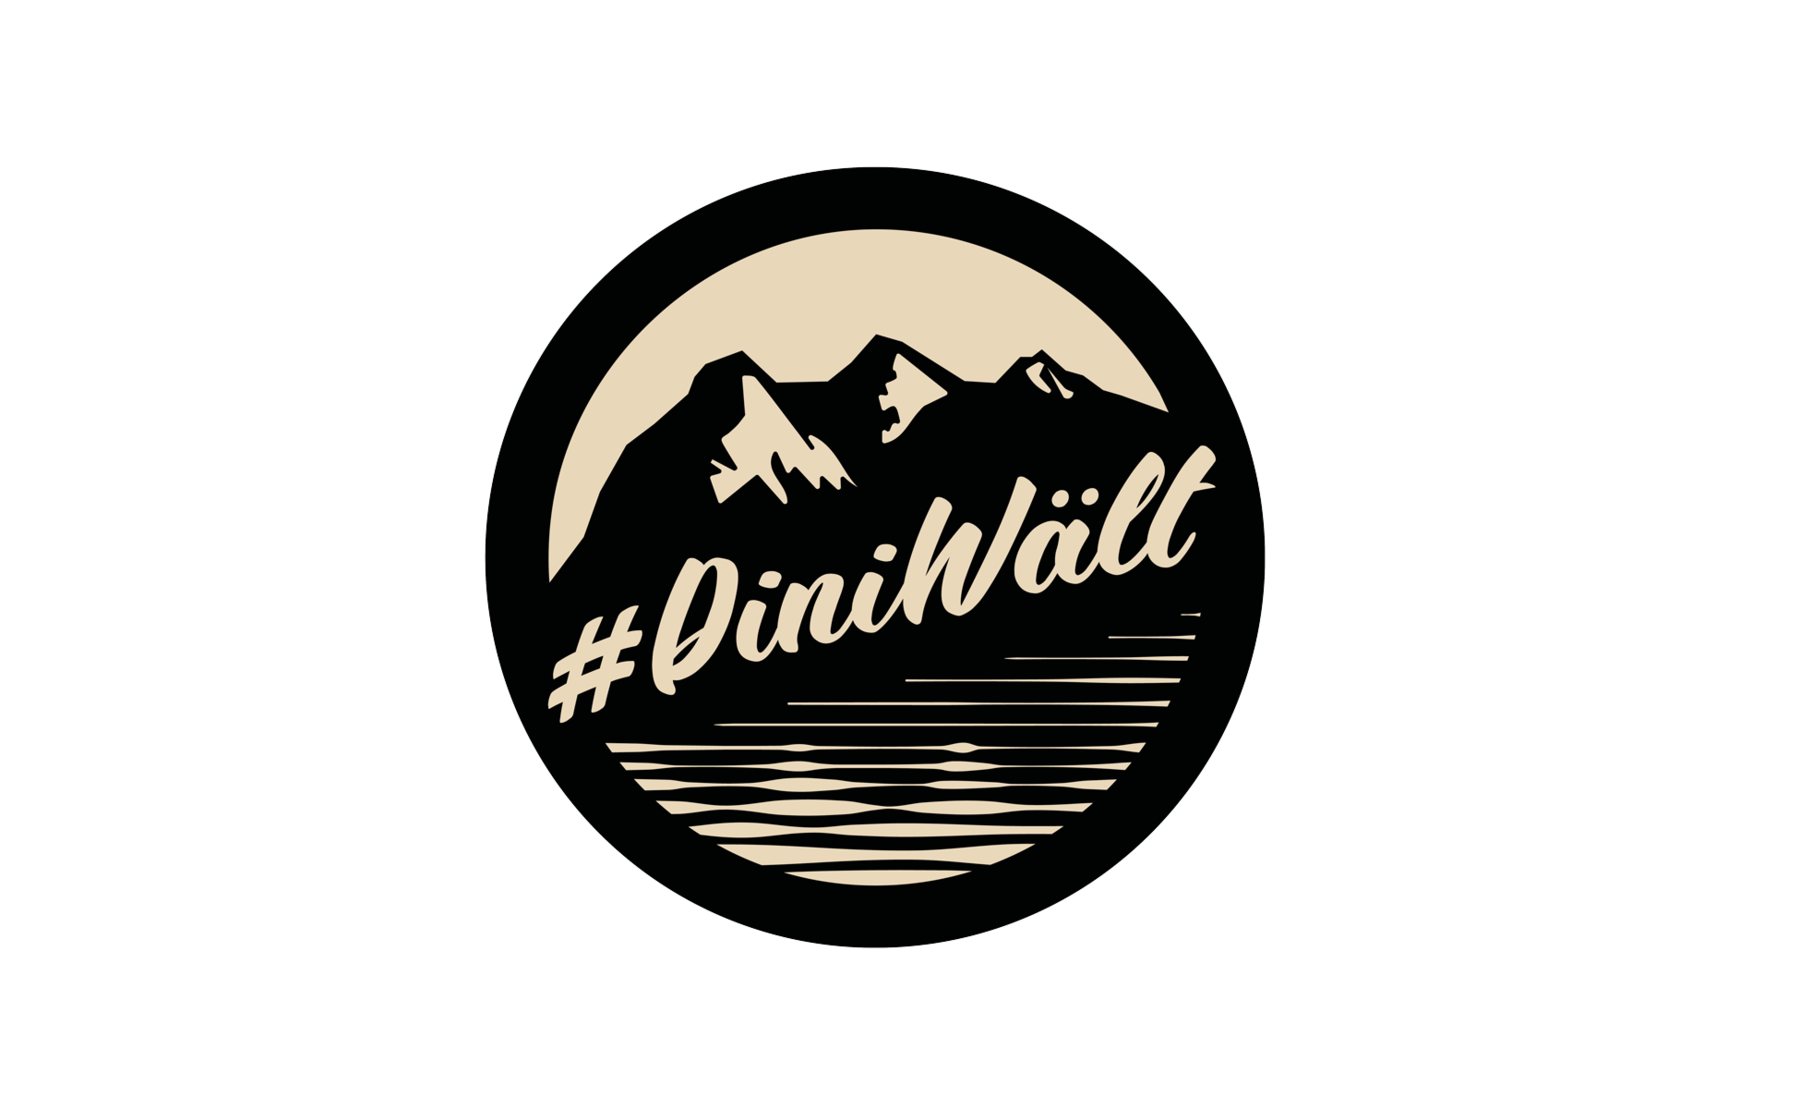 Das kreisförmige Label #DiniWält: Die helle Schrift zieht sich über ein dunkel gezeichnetes Bergpanorama mit See.